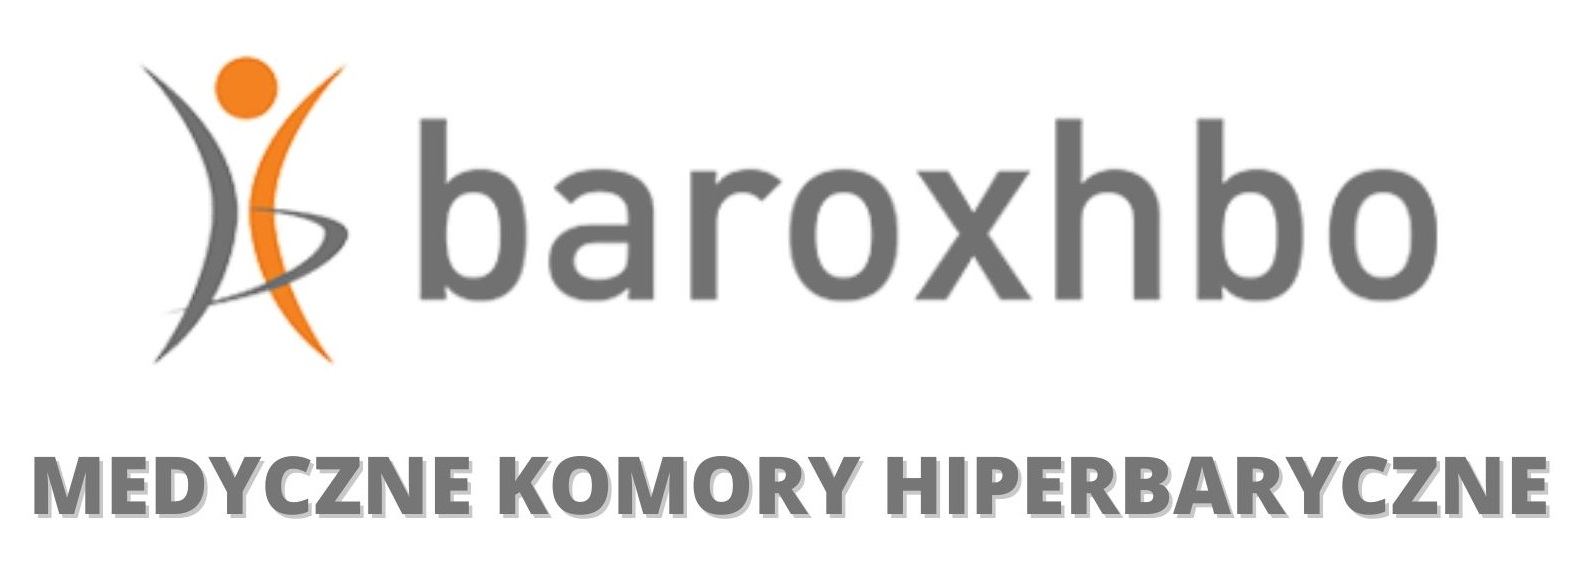 BaroxHBO - medyczne komory hiperbaryczne